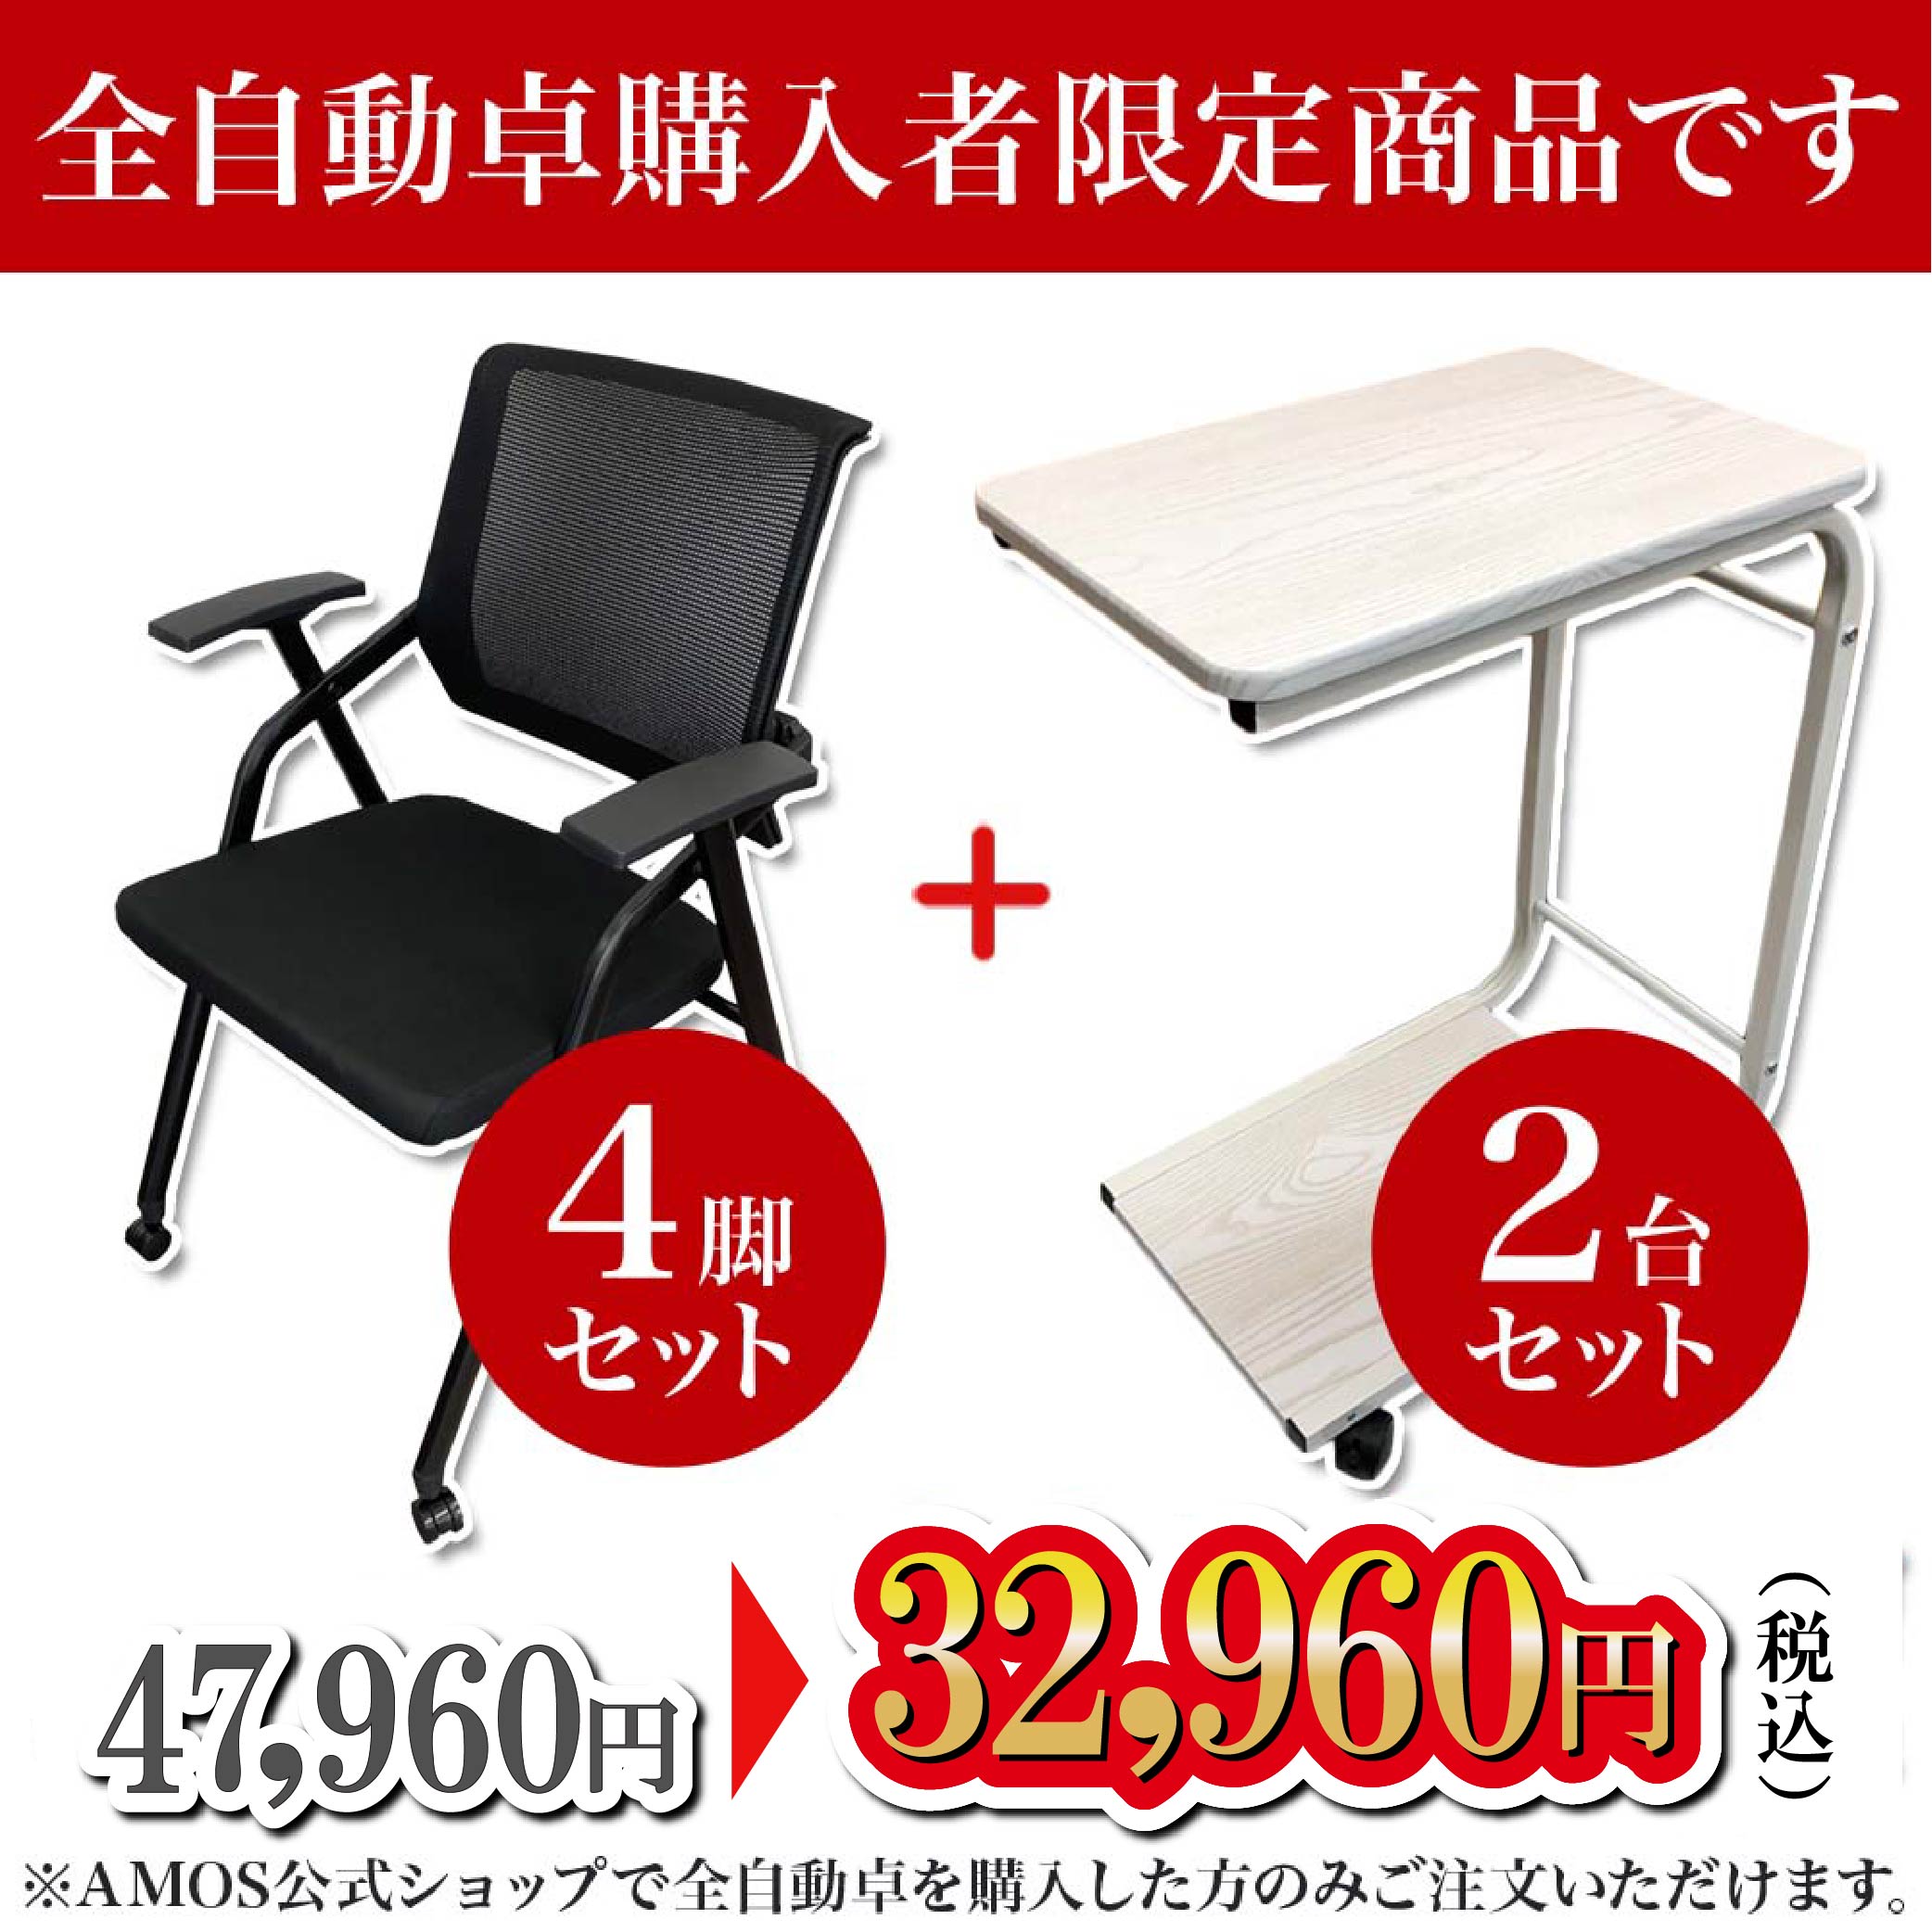 JPシリーズ購入者限定折りたたみ椅子4脚・サイドテーブル2個セット